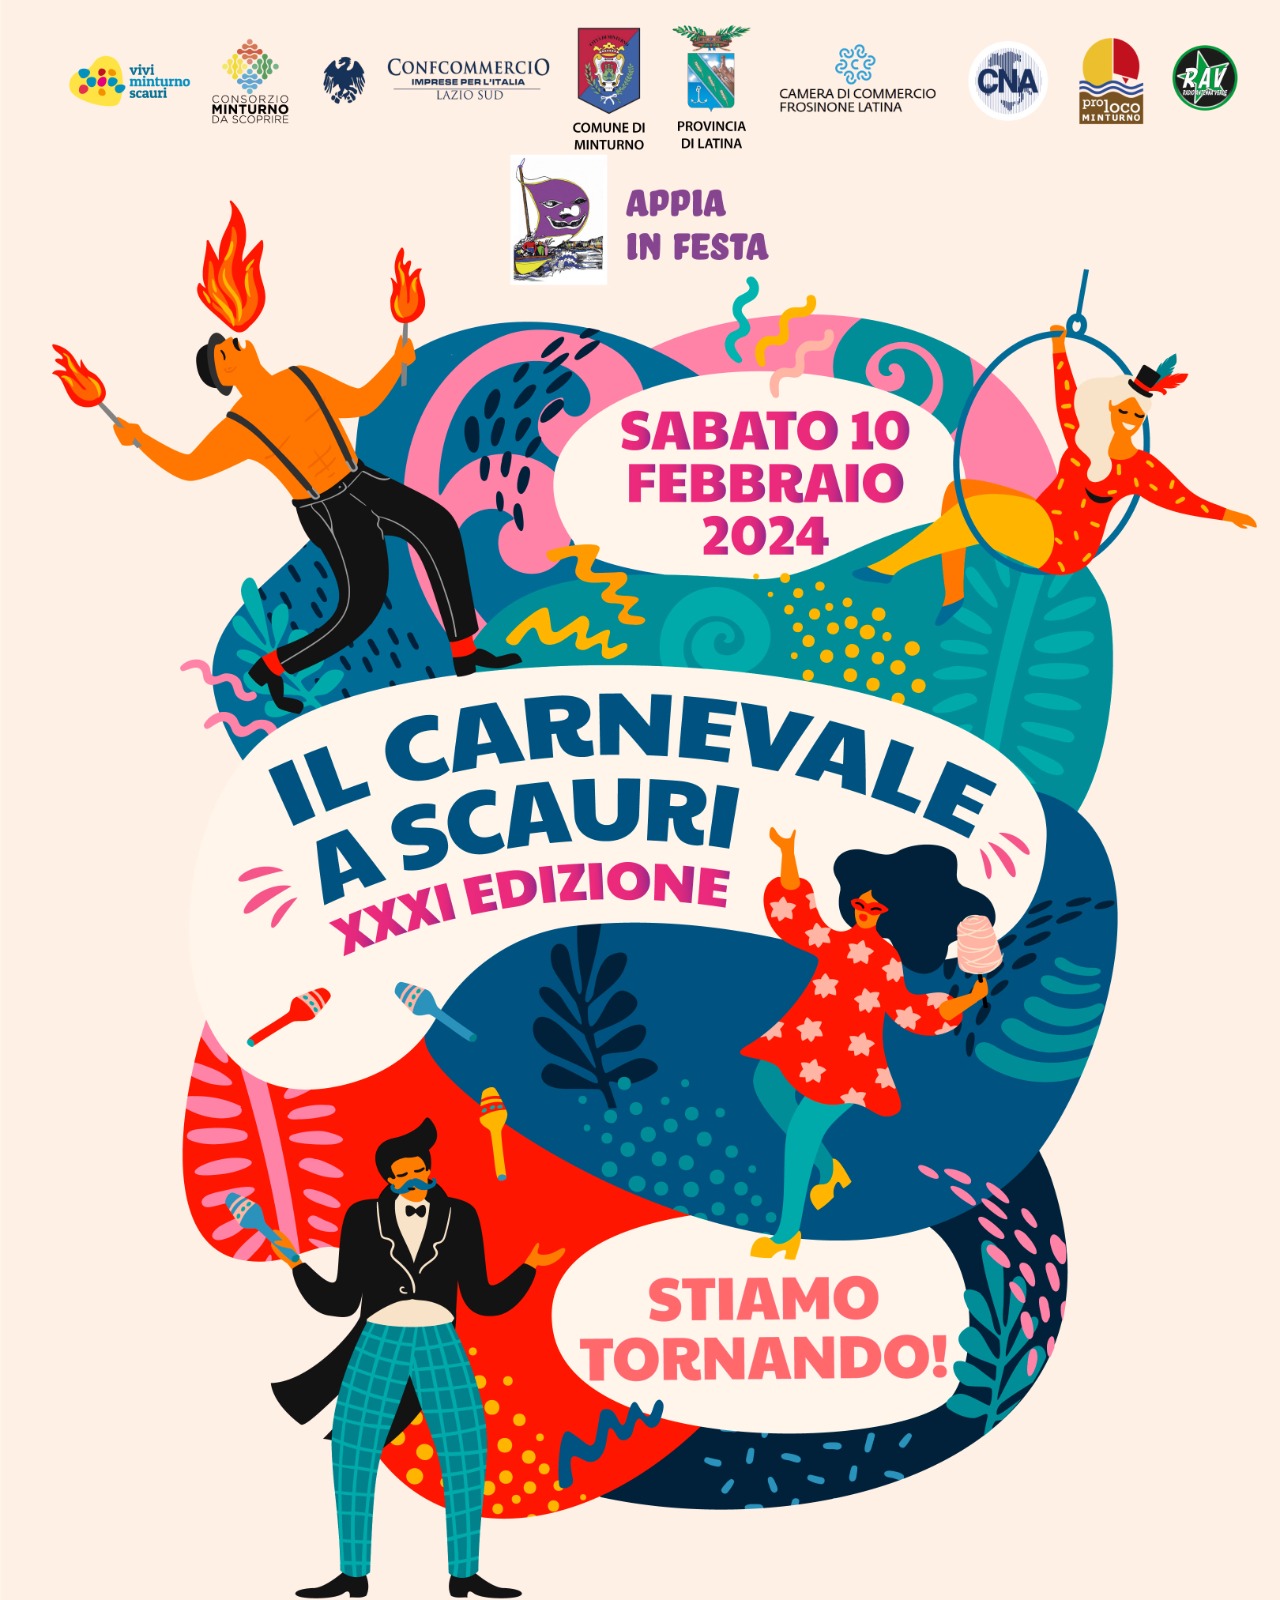 Il Carnevale a Scauri torna con la sua XXI edizione, a breve il programma!! 

Preparate le vostre maschere, ci vediamo il 10 febbraio!!